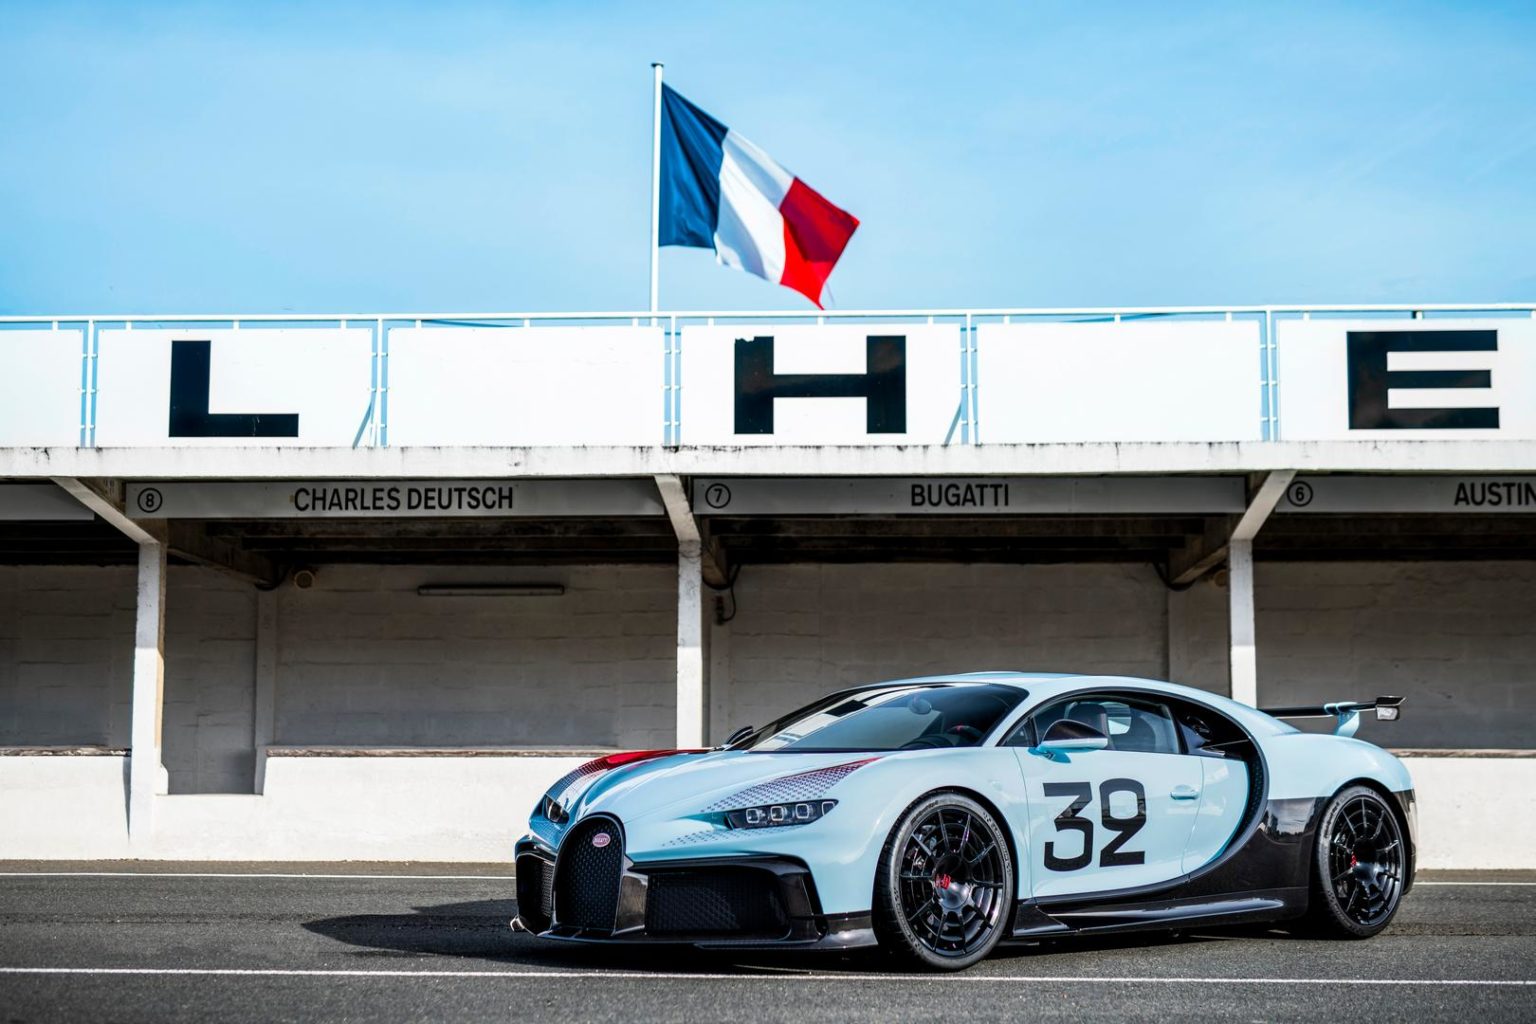 Bugatti Sur Mesure представил свой первый клиентский проект - Chion Pur Sport, вдохновленный знаменитым автогонщиком 20-го века Луи Широном.